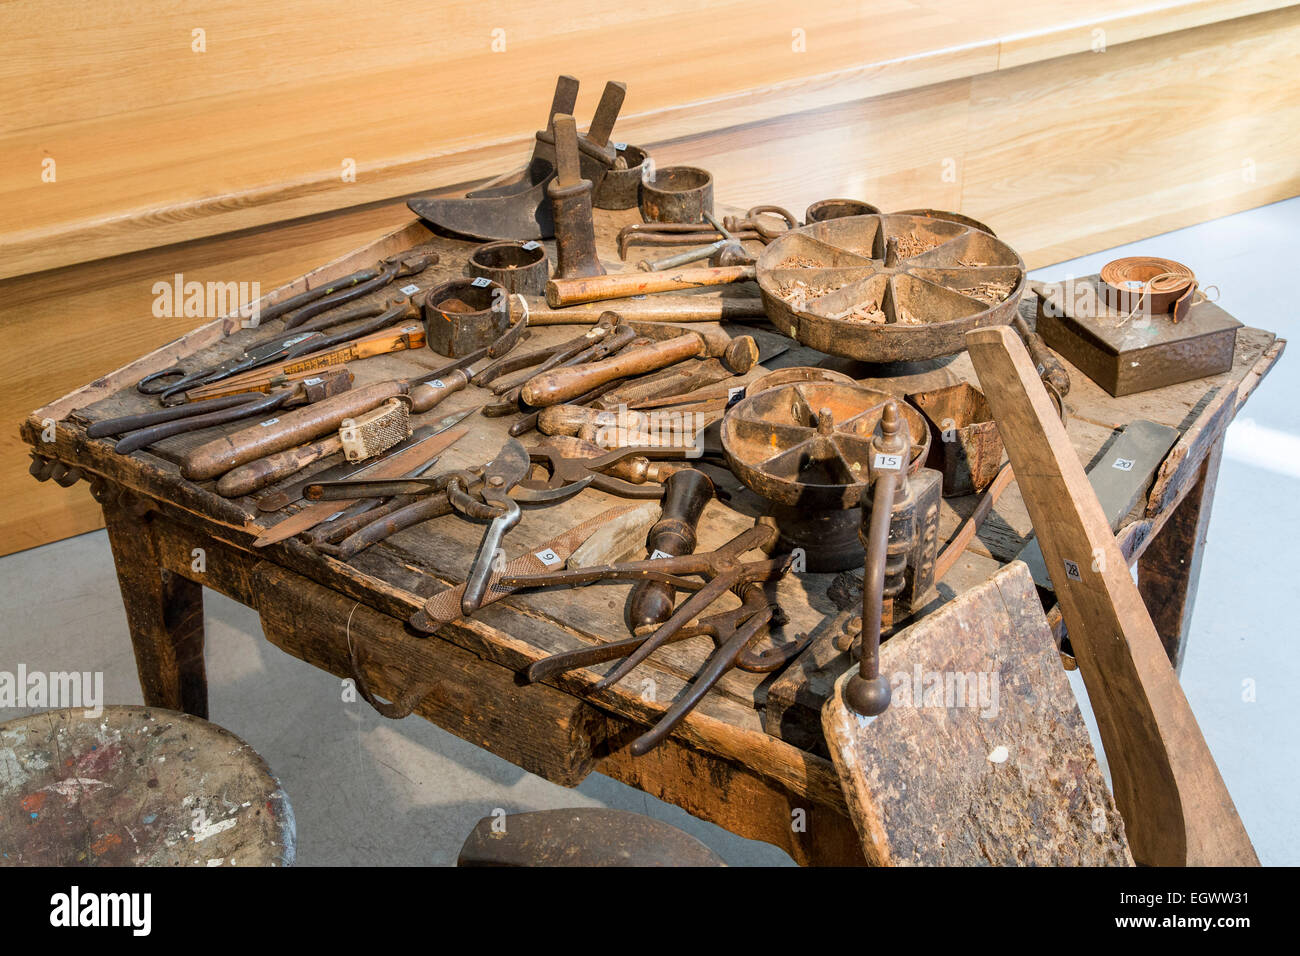 Pelle e cuoio concia museum, in Mülheim, Germania, mostra la storia dell'industria del cuoio in questa area Foto Stock